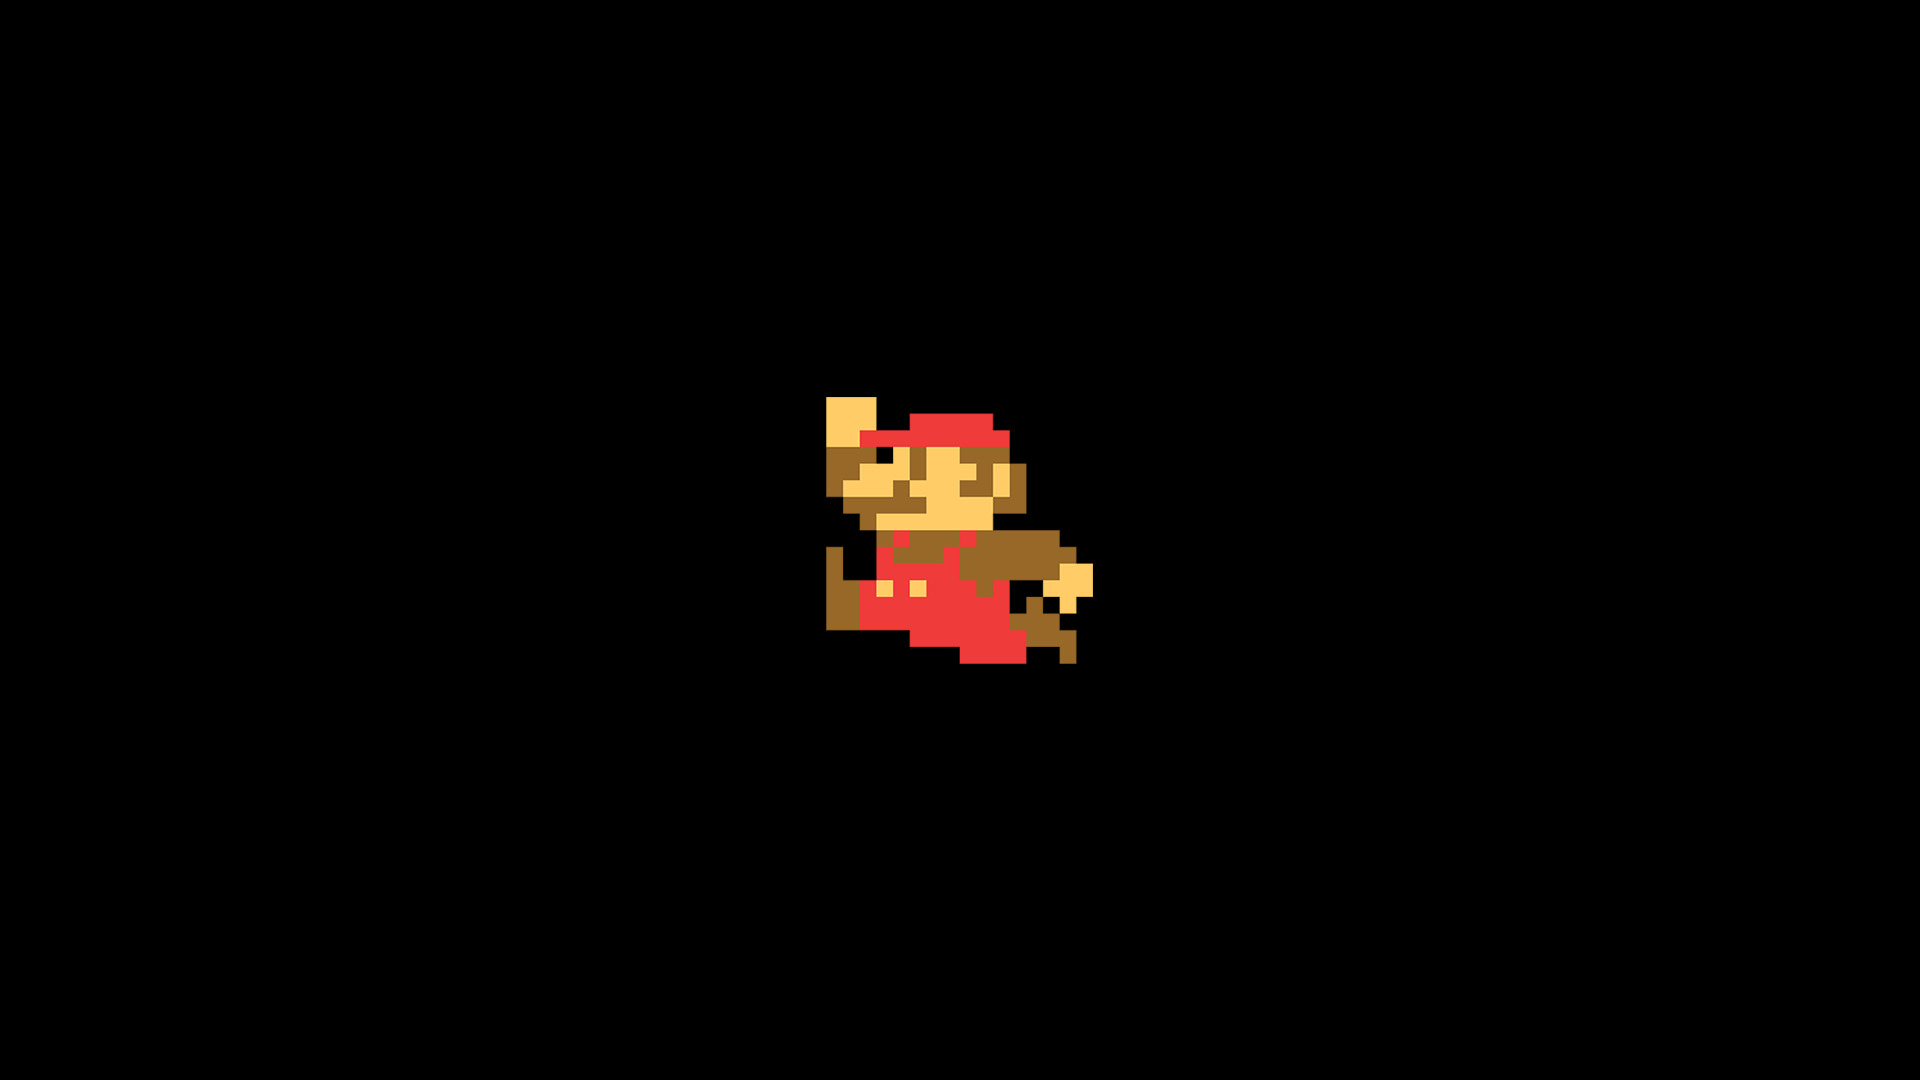 8 bit, Super Mario, Minimalism, Video Games, Pixels Wallpaper